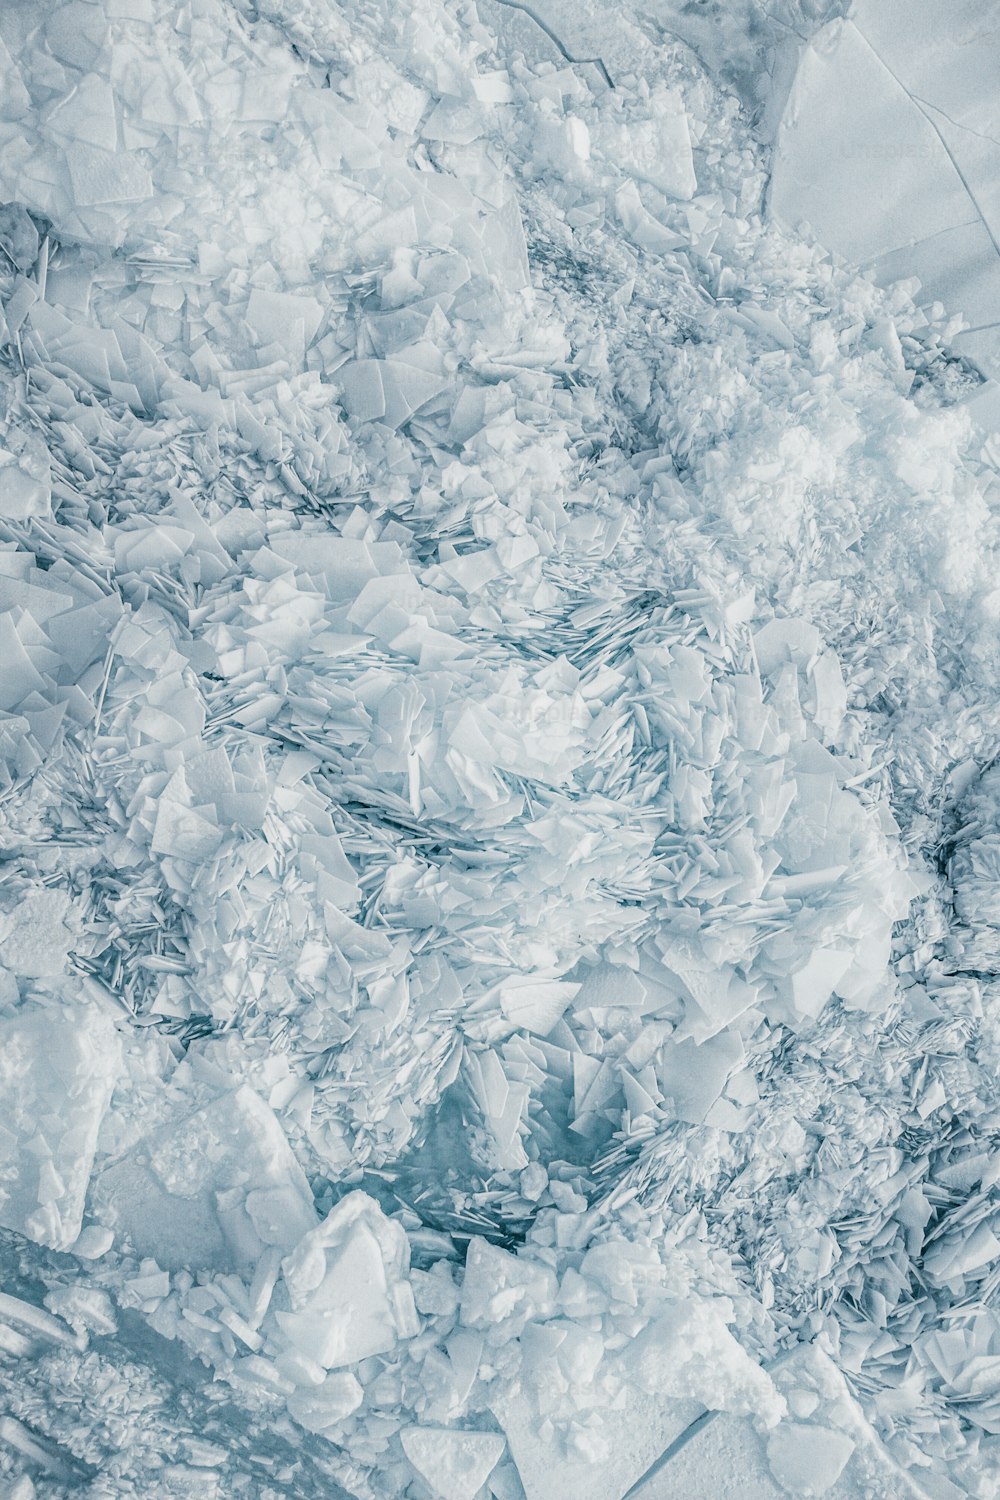 uma grande quantidade de gelo flutuando em cima de um corpo de água